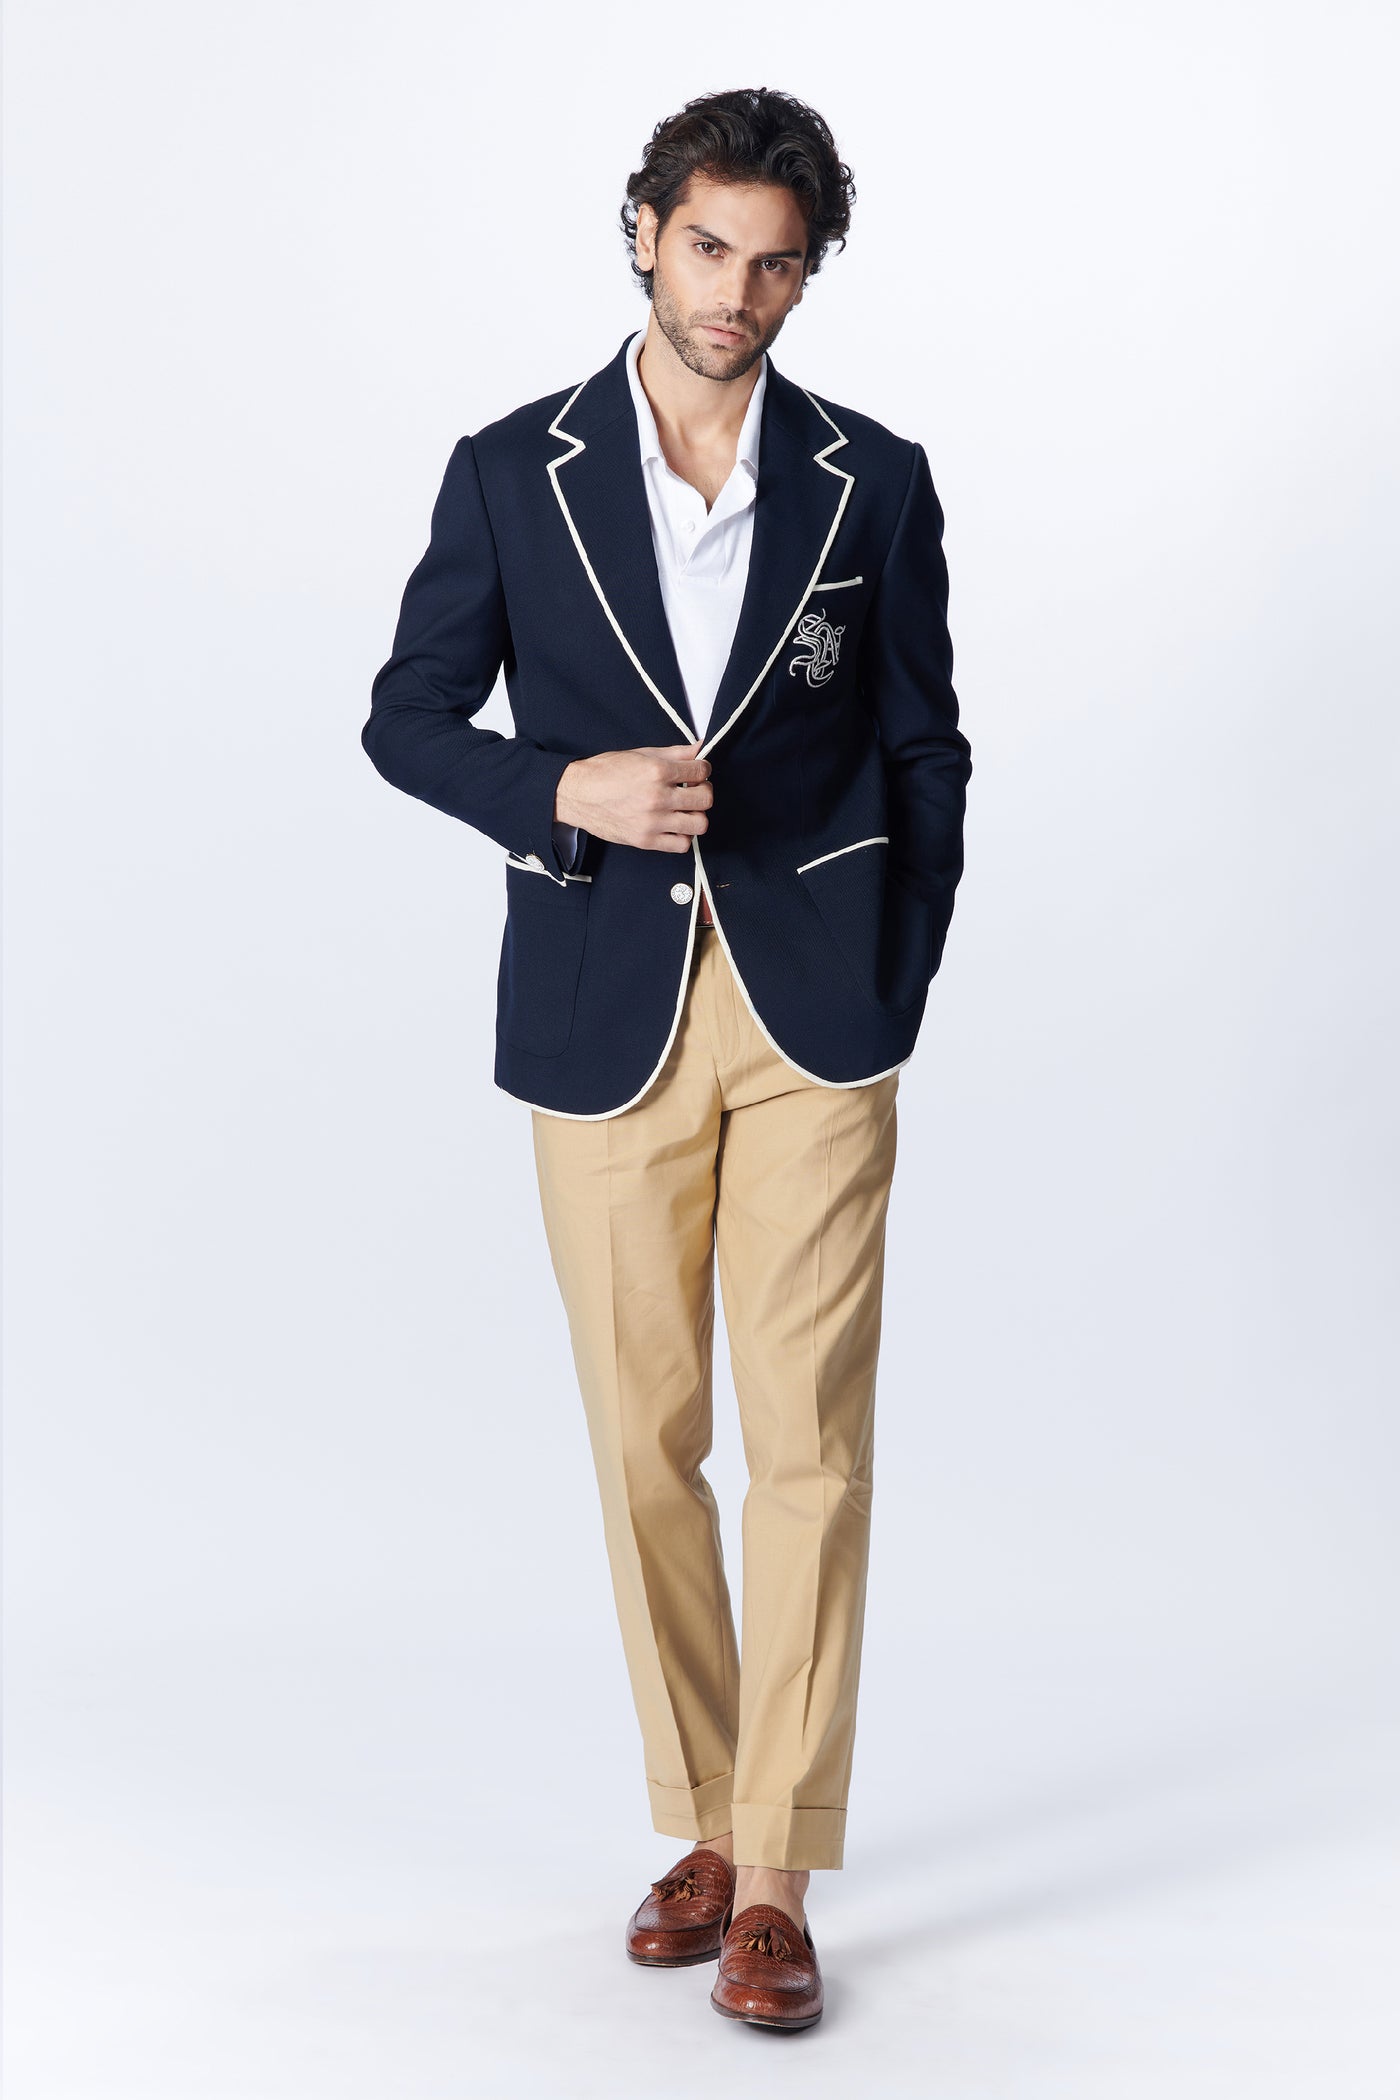 SN By Shantanu Nikhil Menswear SNCC Gentlemen's Navy Jacket indian designer wear online shopping melange singapore